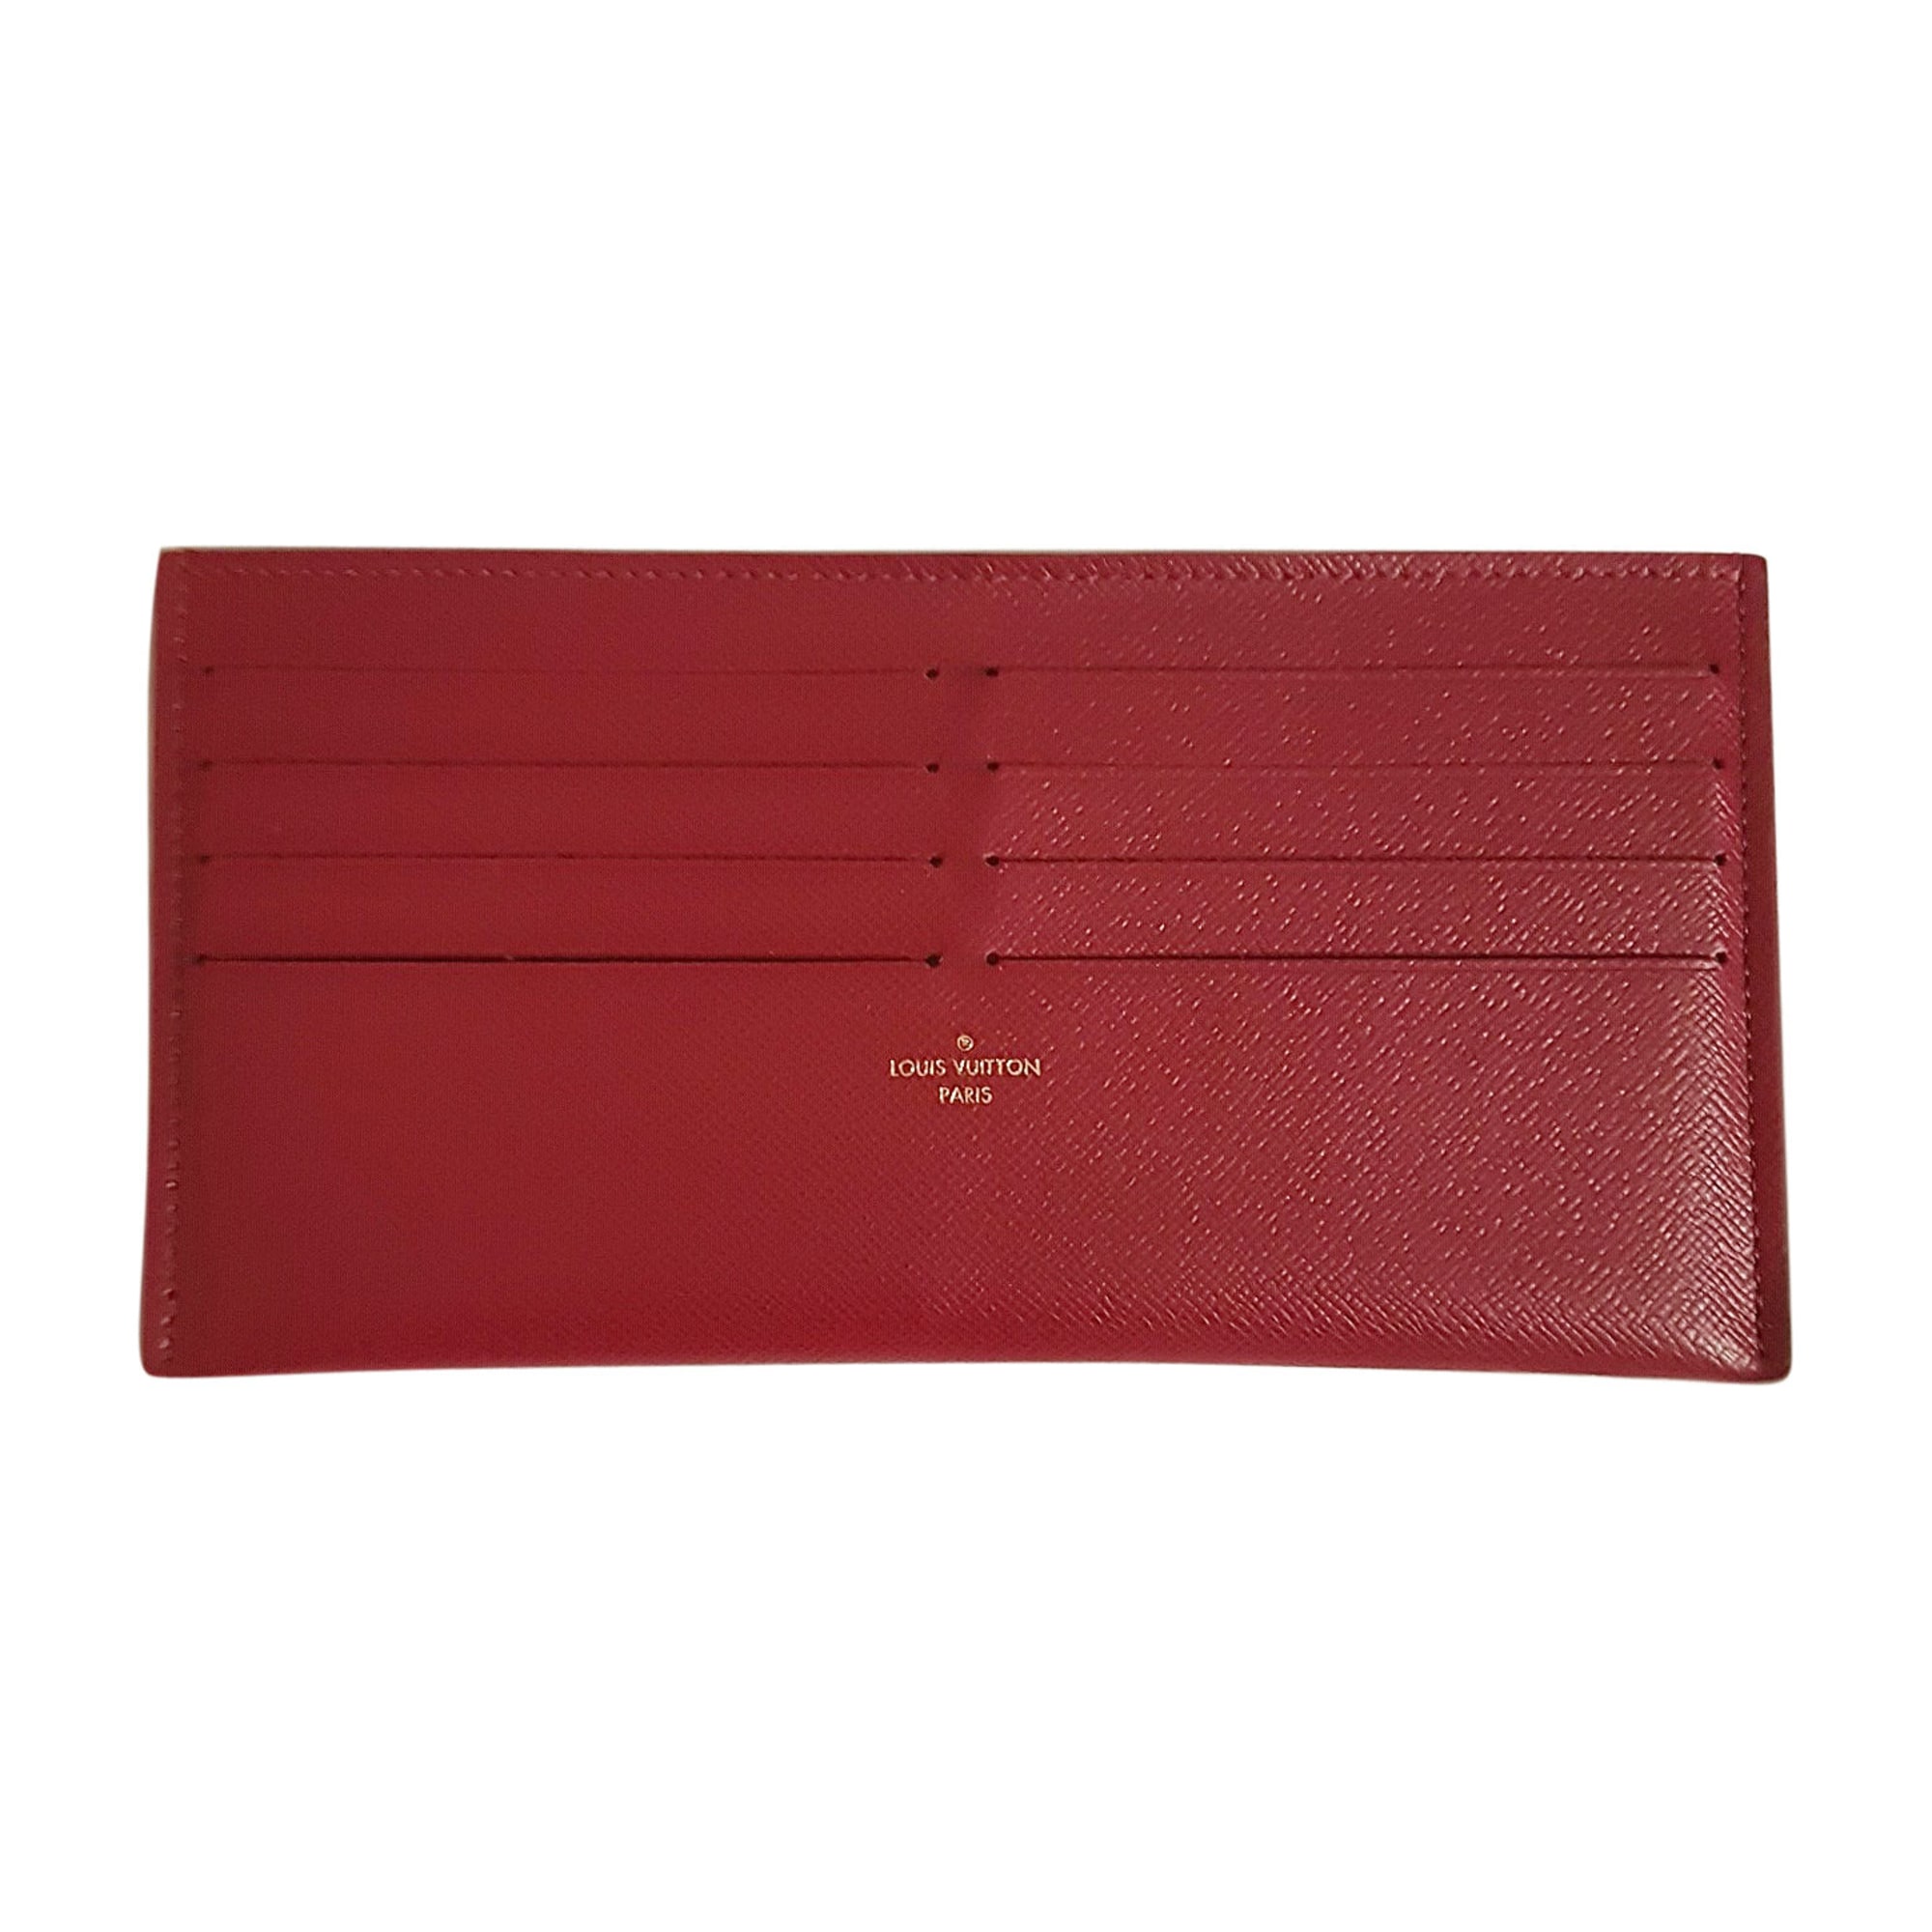 Porte-cartes LOUIS VUITTON rouge vendu par 'closetbykima' - 5156721